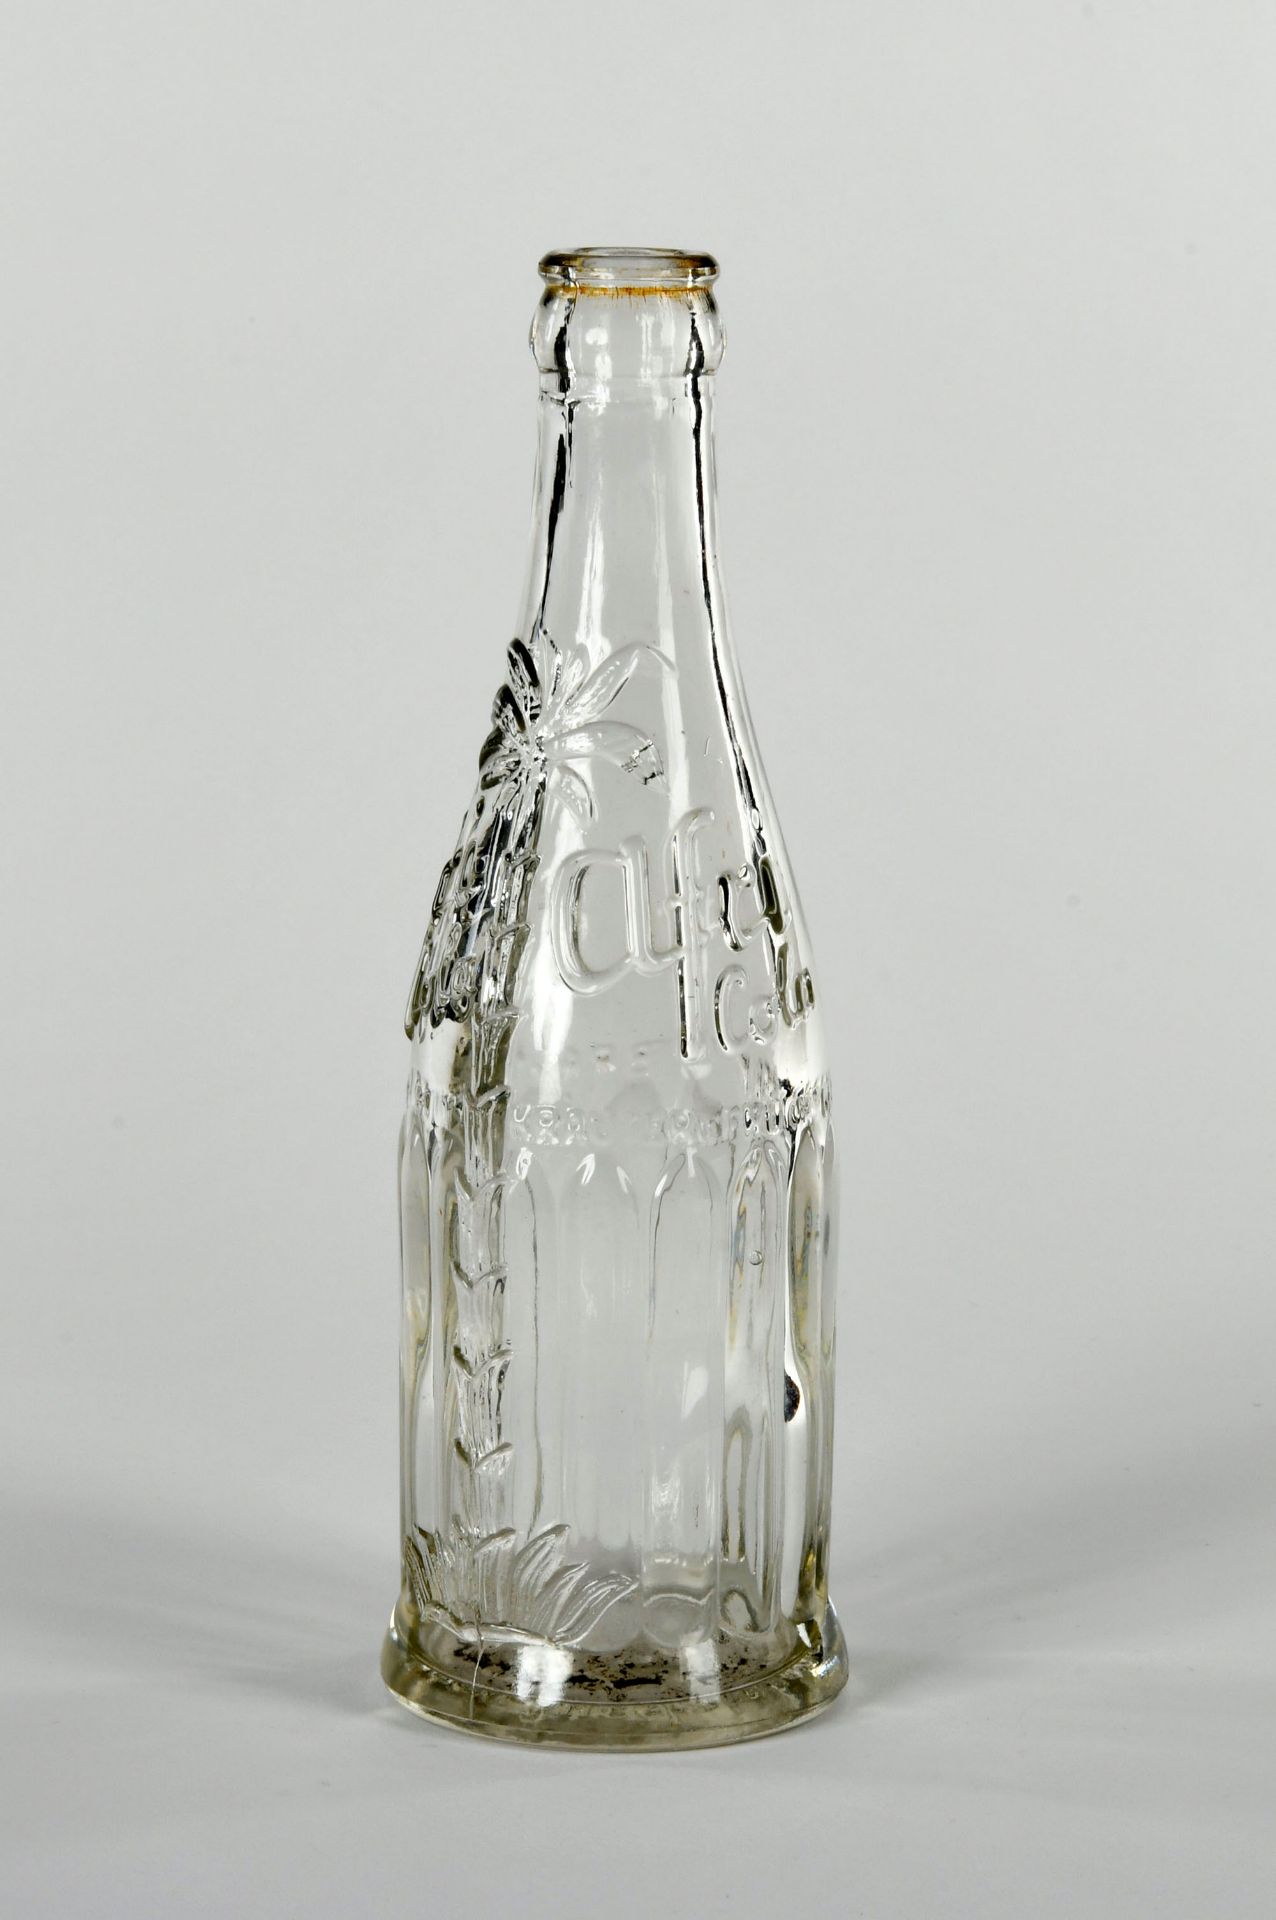 Afri Cola bottle around 1946/1950, 21 cm